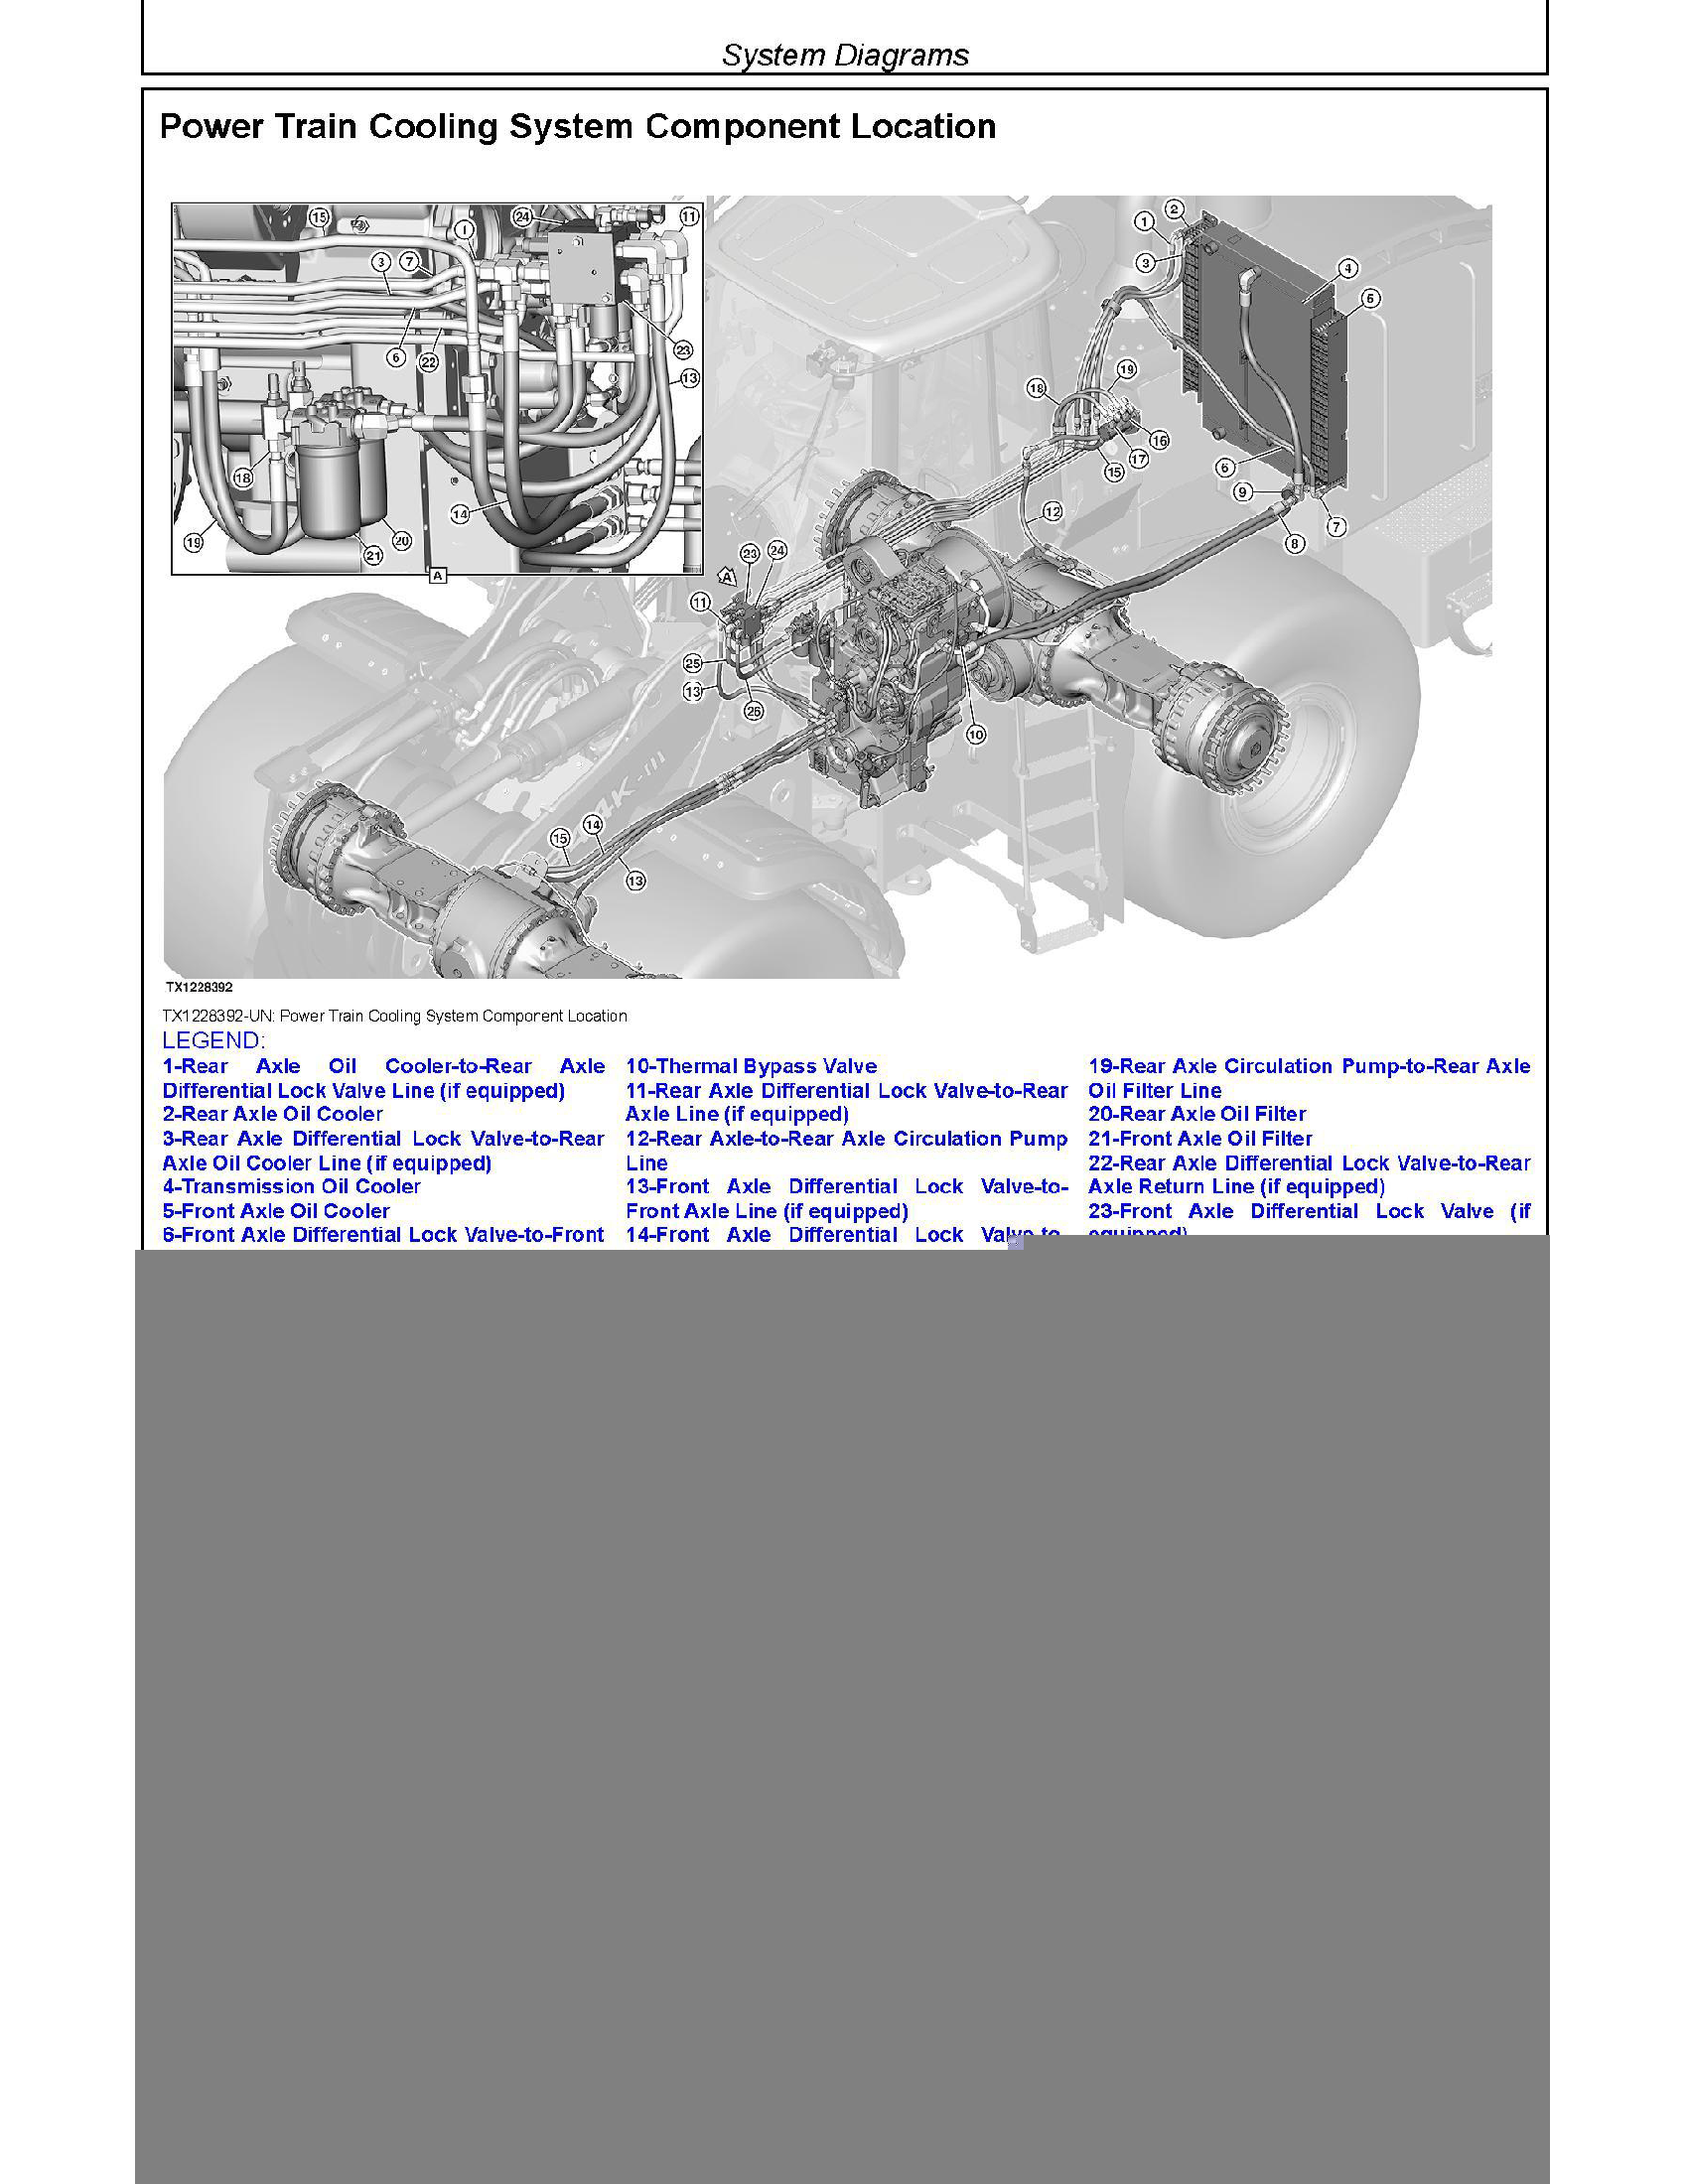 John Deere 850K manual pdf